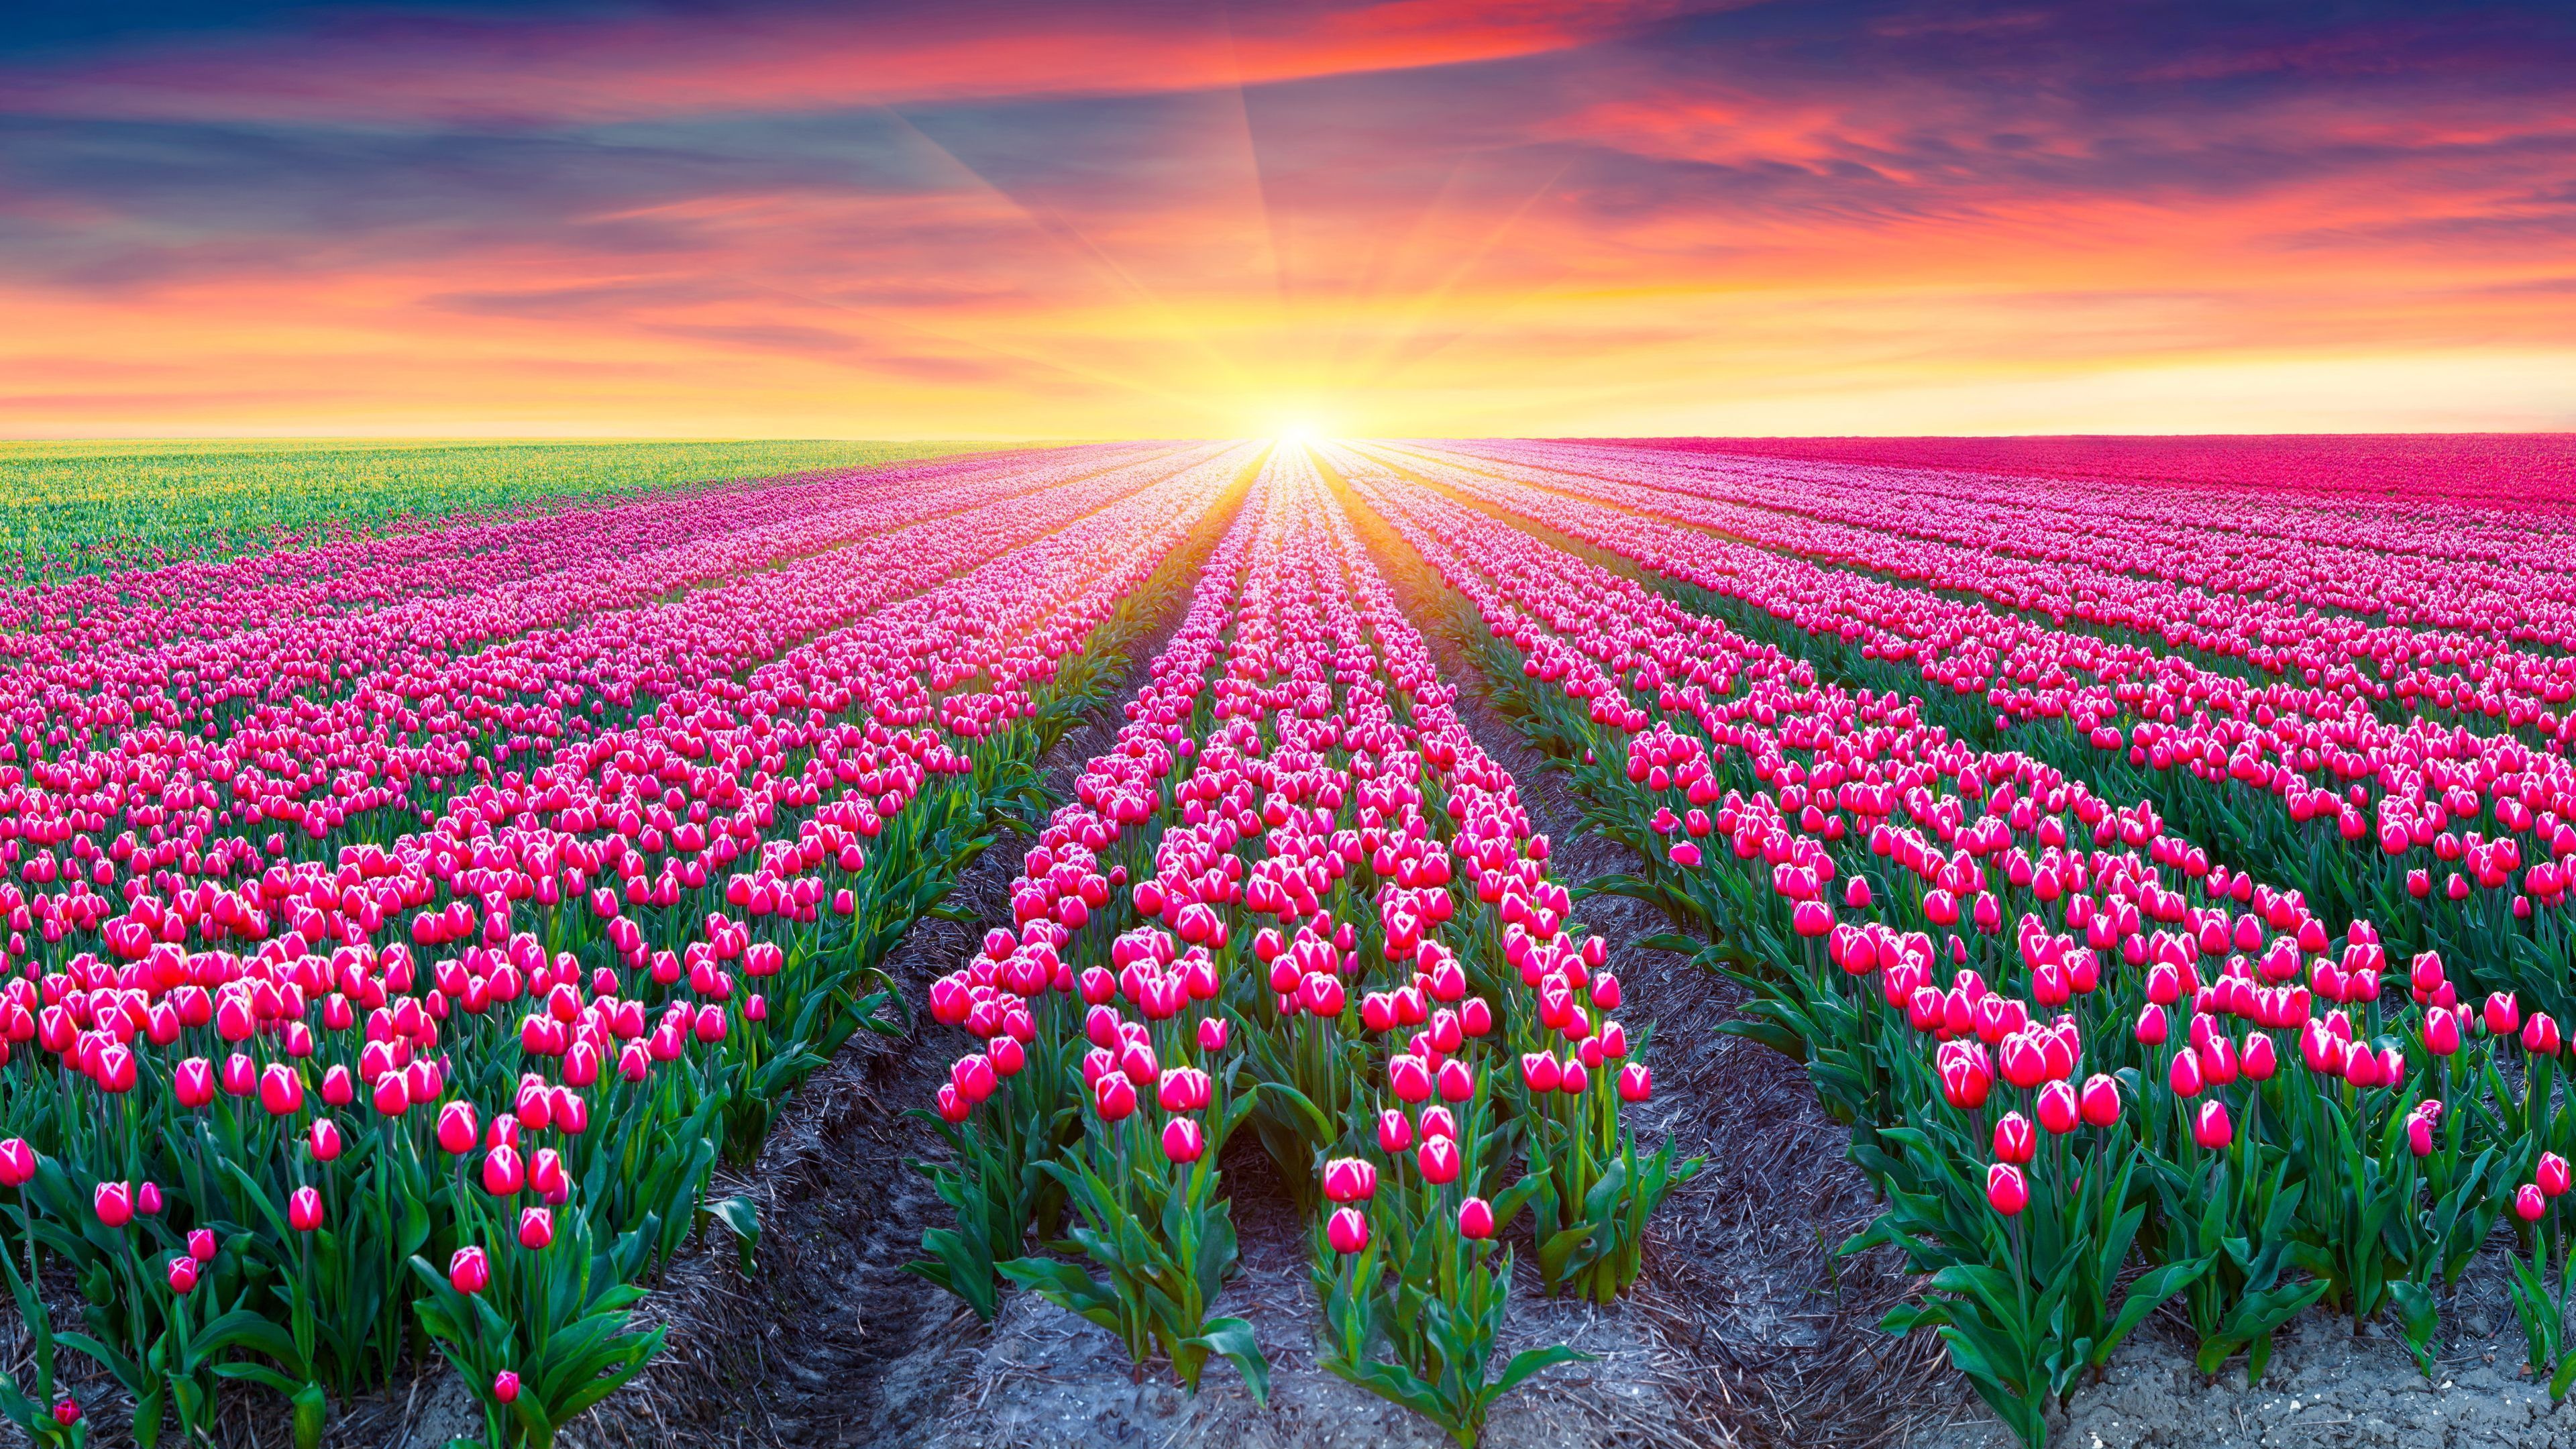 Tulip Fields Of Beautiful Flowers Wallpaper HD Free Download. Flower field, Tulip fields, Tulip season